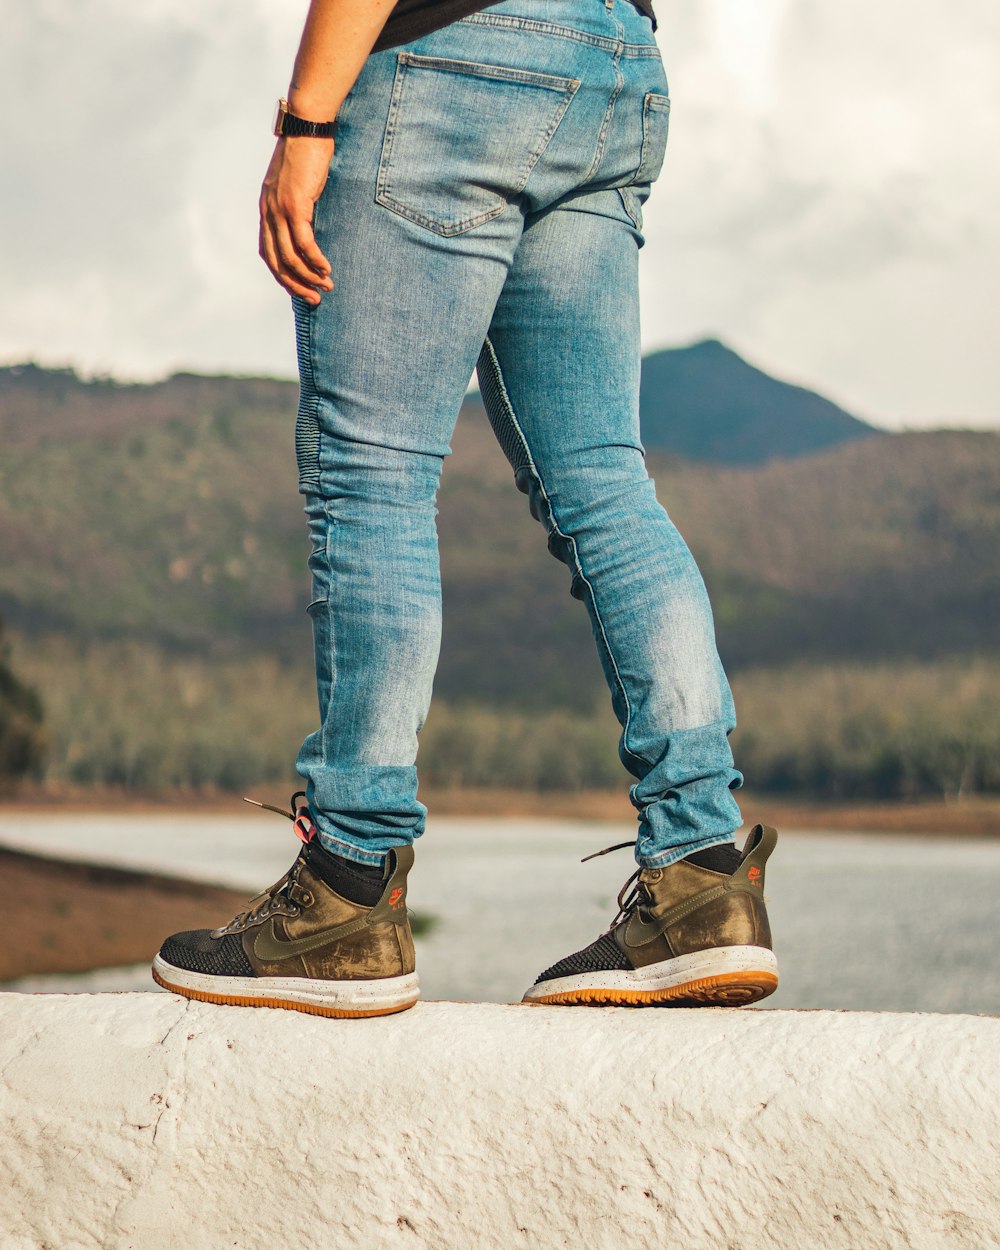 Foto Persona con jeans azules y zapatos marrones para caminar – Imagen  Tenis gratis en Unsplash